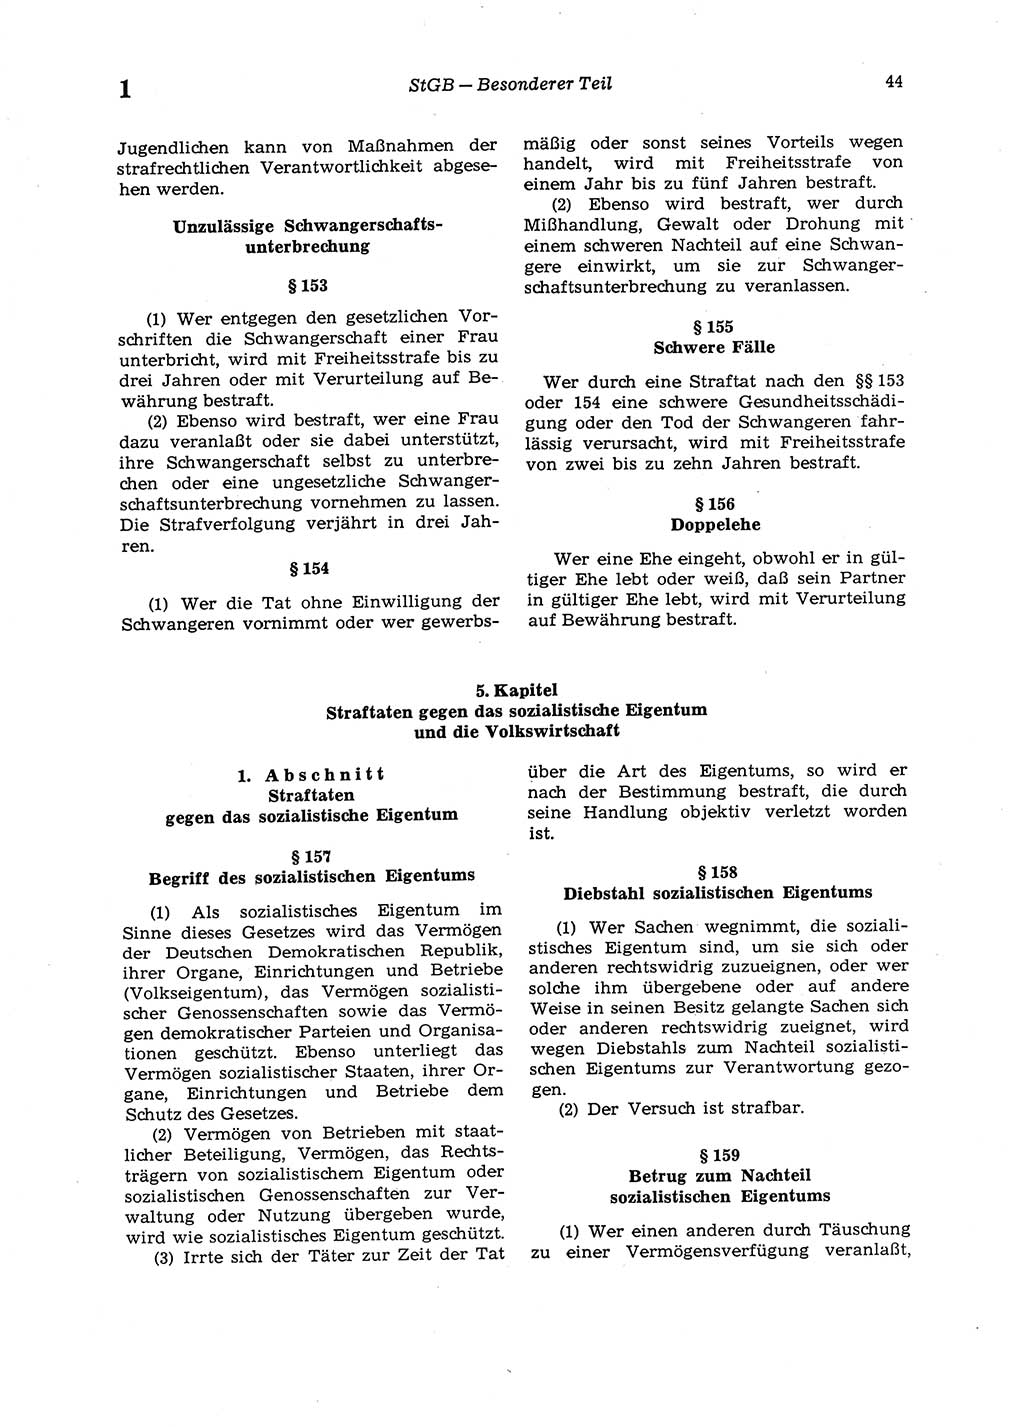 Strafgesetzbuch (StGB) der Deutschen Demokratischen Republik (DDR) 1987, Seite 44 (StGB DDR 1987, S. 44)